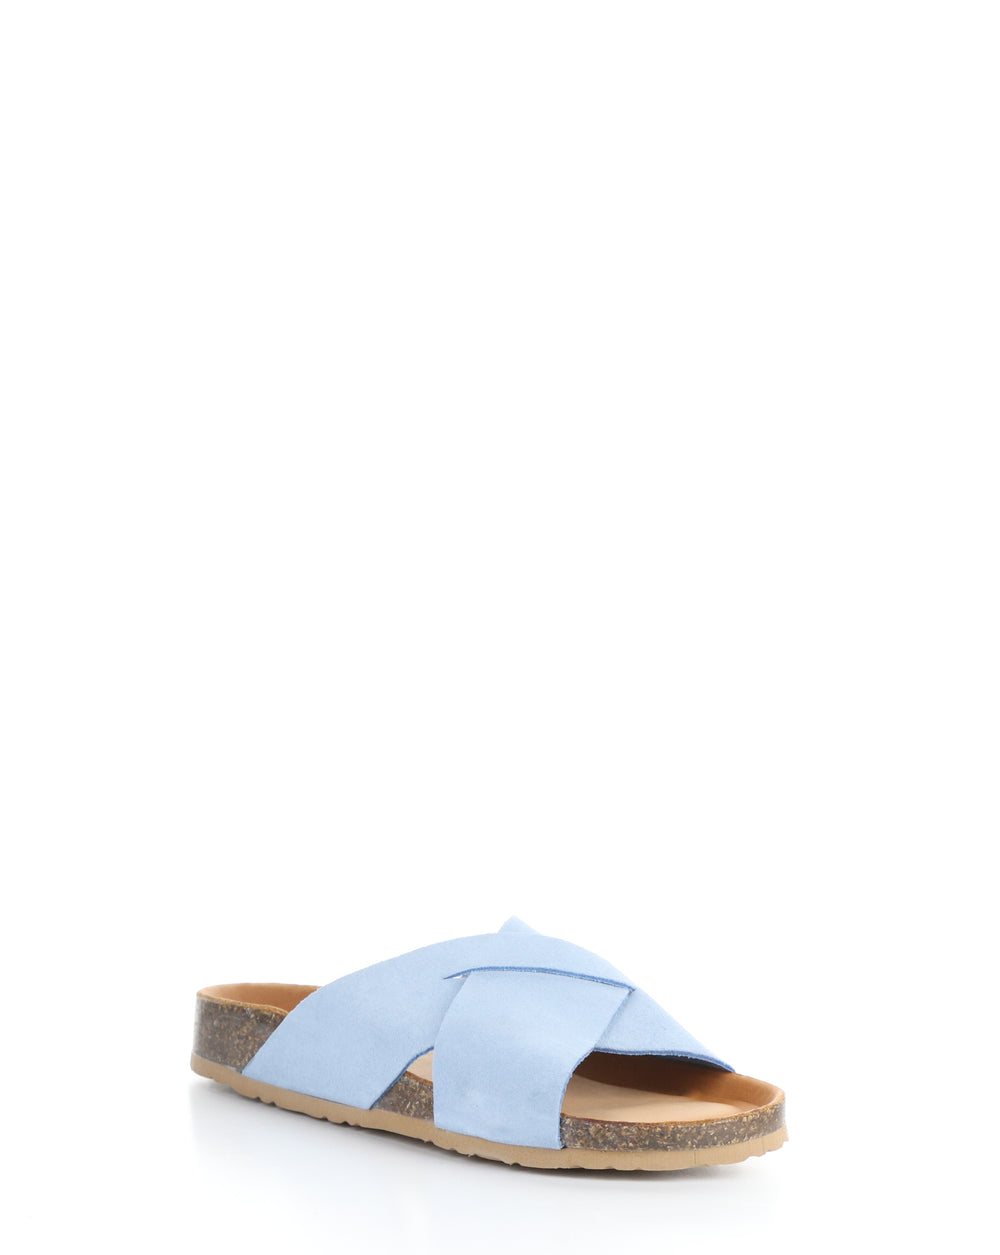 MAISIE SKY BLUE Slip-on Sandals